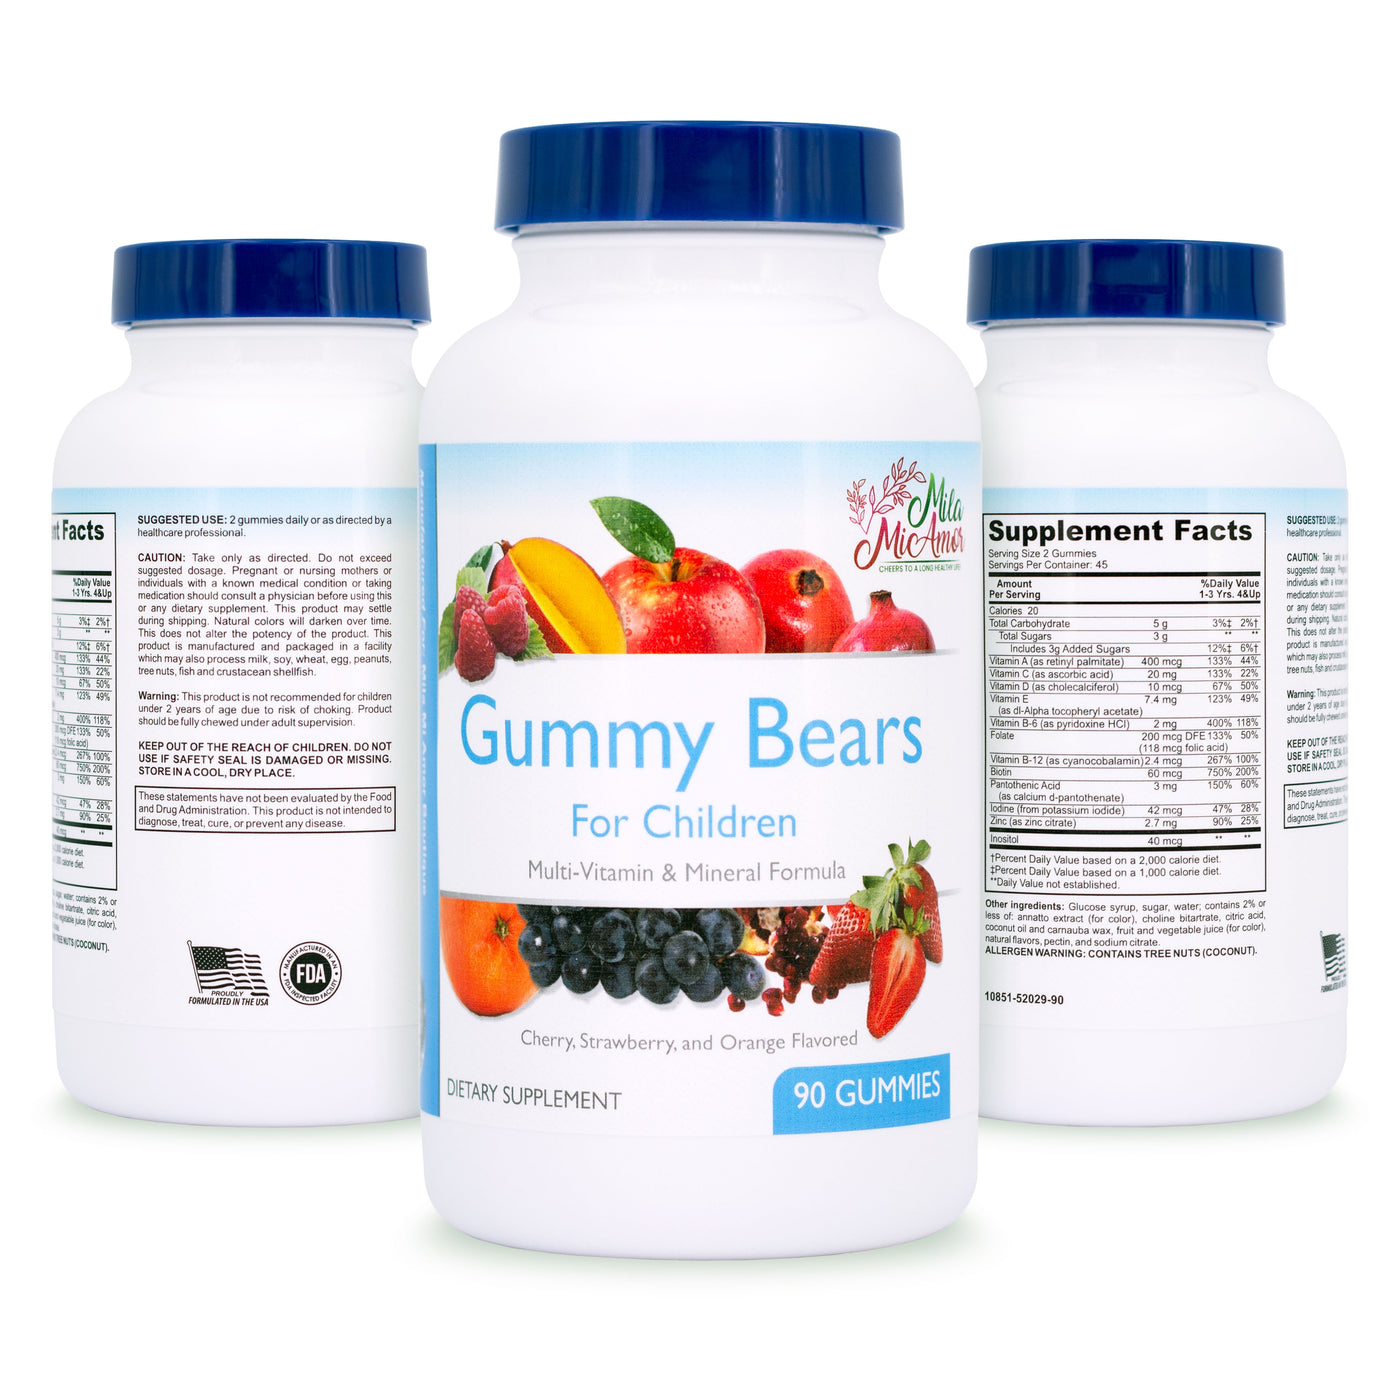 Multi-Vitamin Gummy Bears for Children